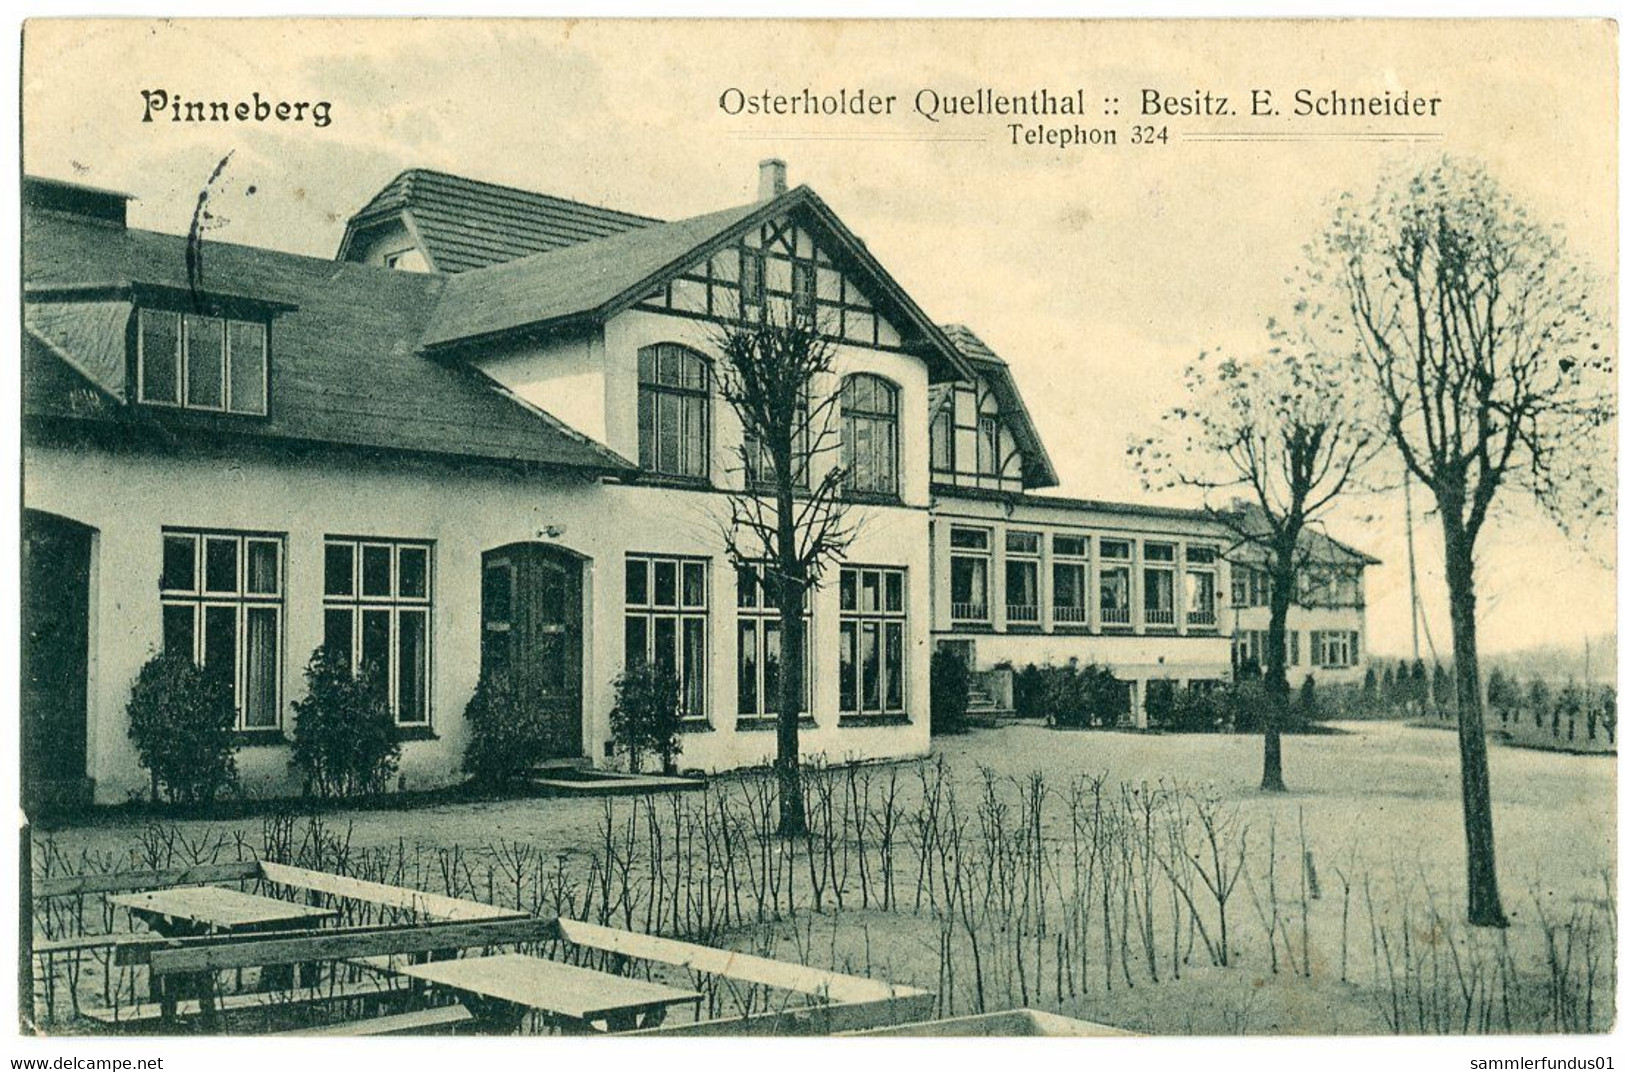 AK/CP Pinneberg  Osterholder Quellenthal     Gel./circ.  1912  Erhaltung/Cond. 1-   Nr. 01537 - Pinneberg